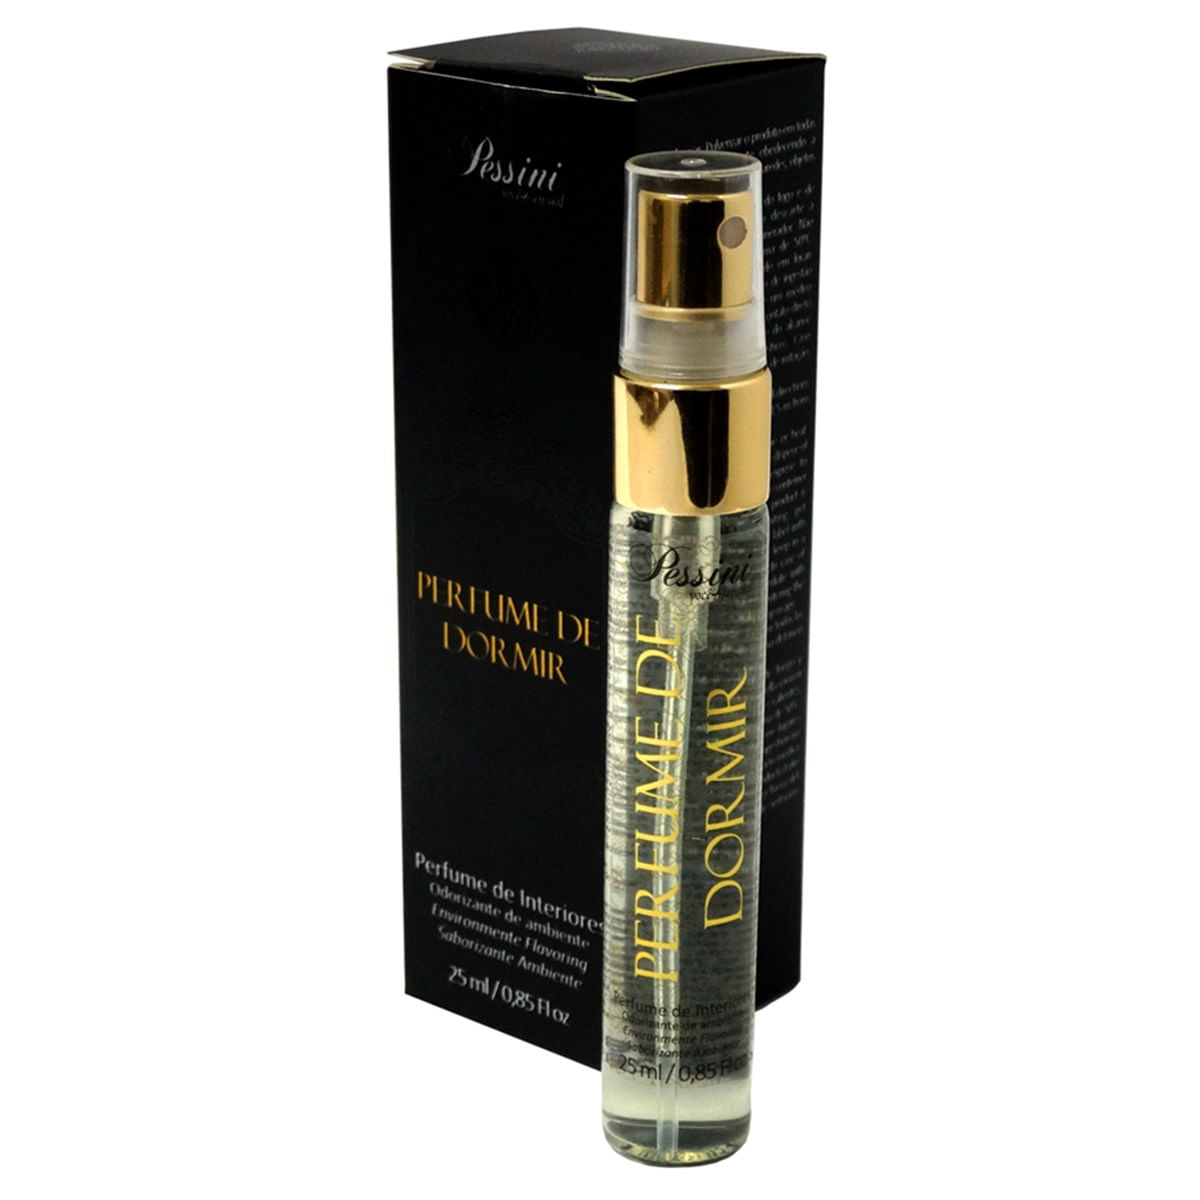 Perfume de Dormir Odorizante de Ambiente 25ml Pessini